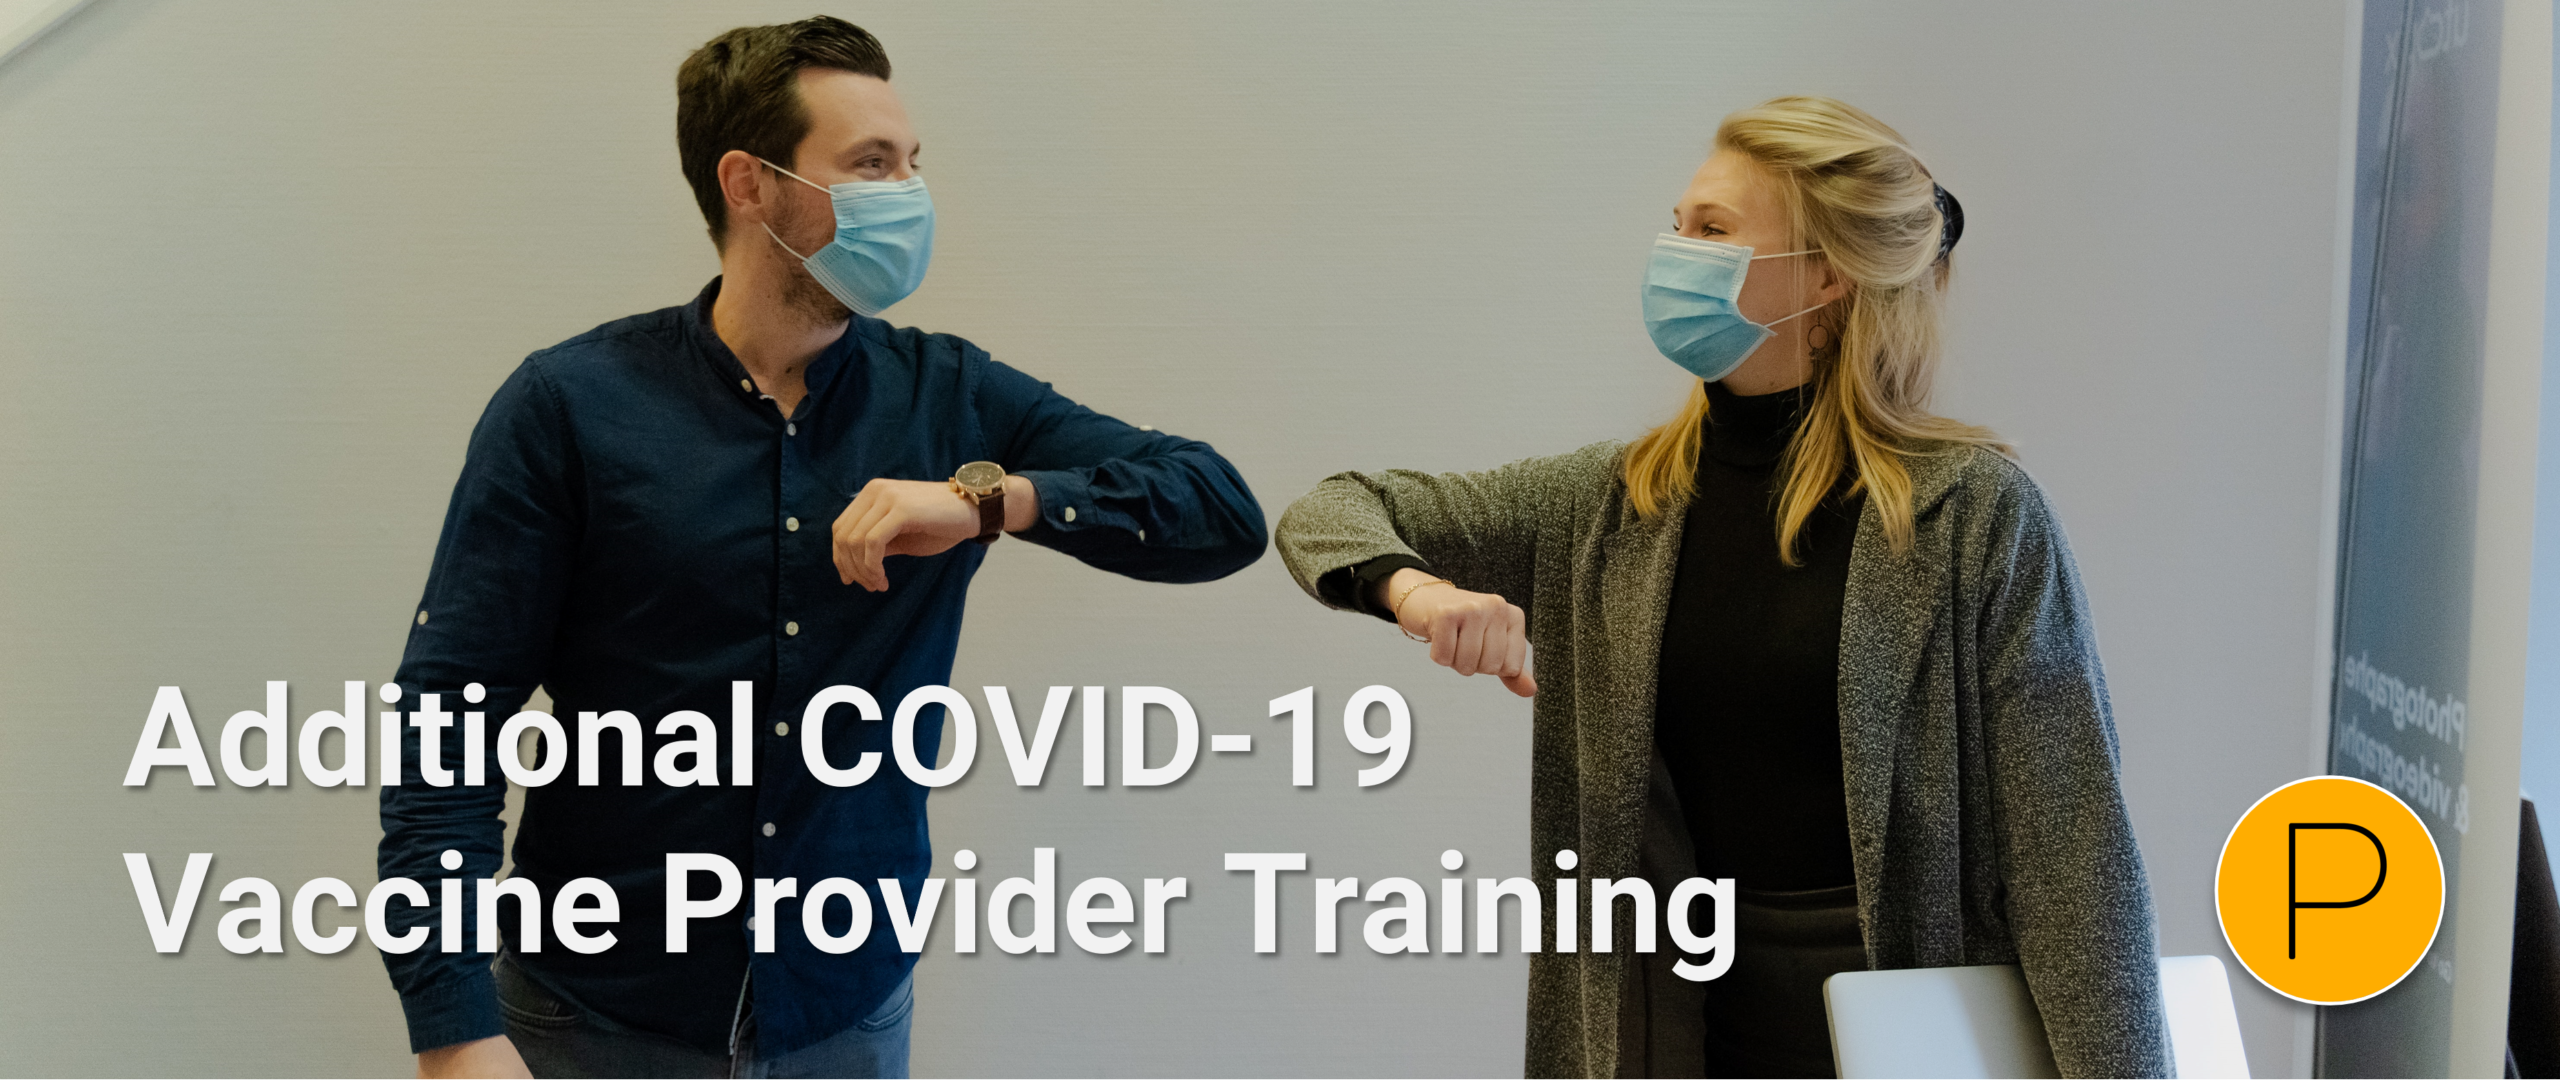 COVID-19 Provider Vaccine Delivery Training